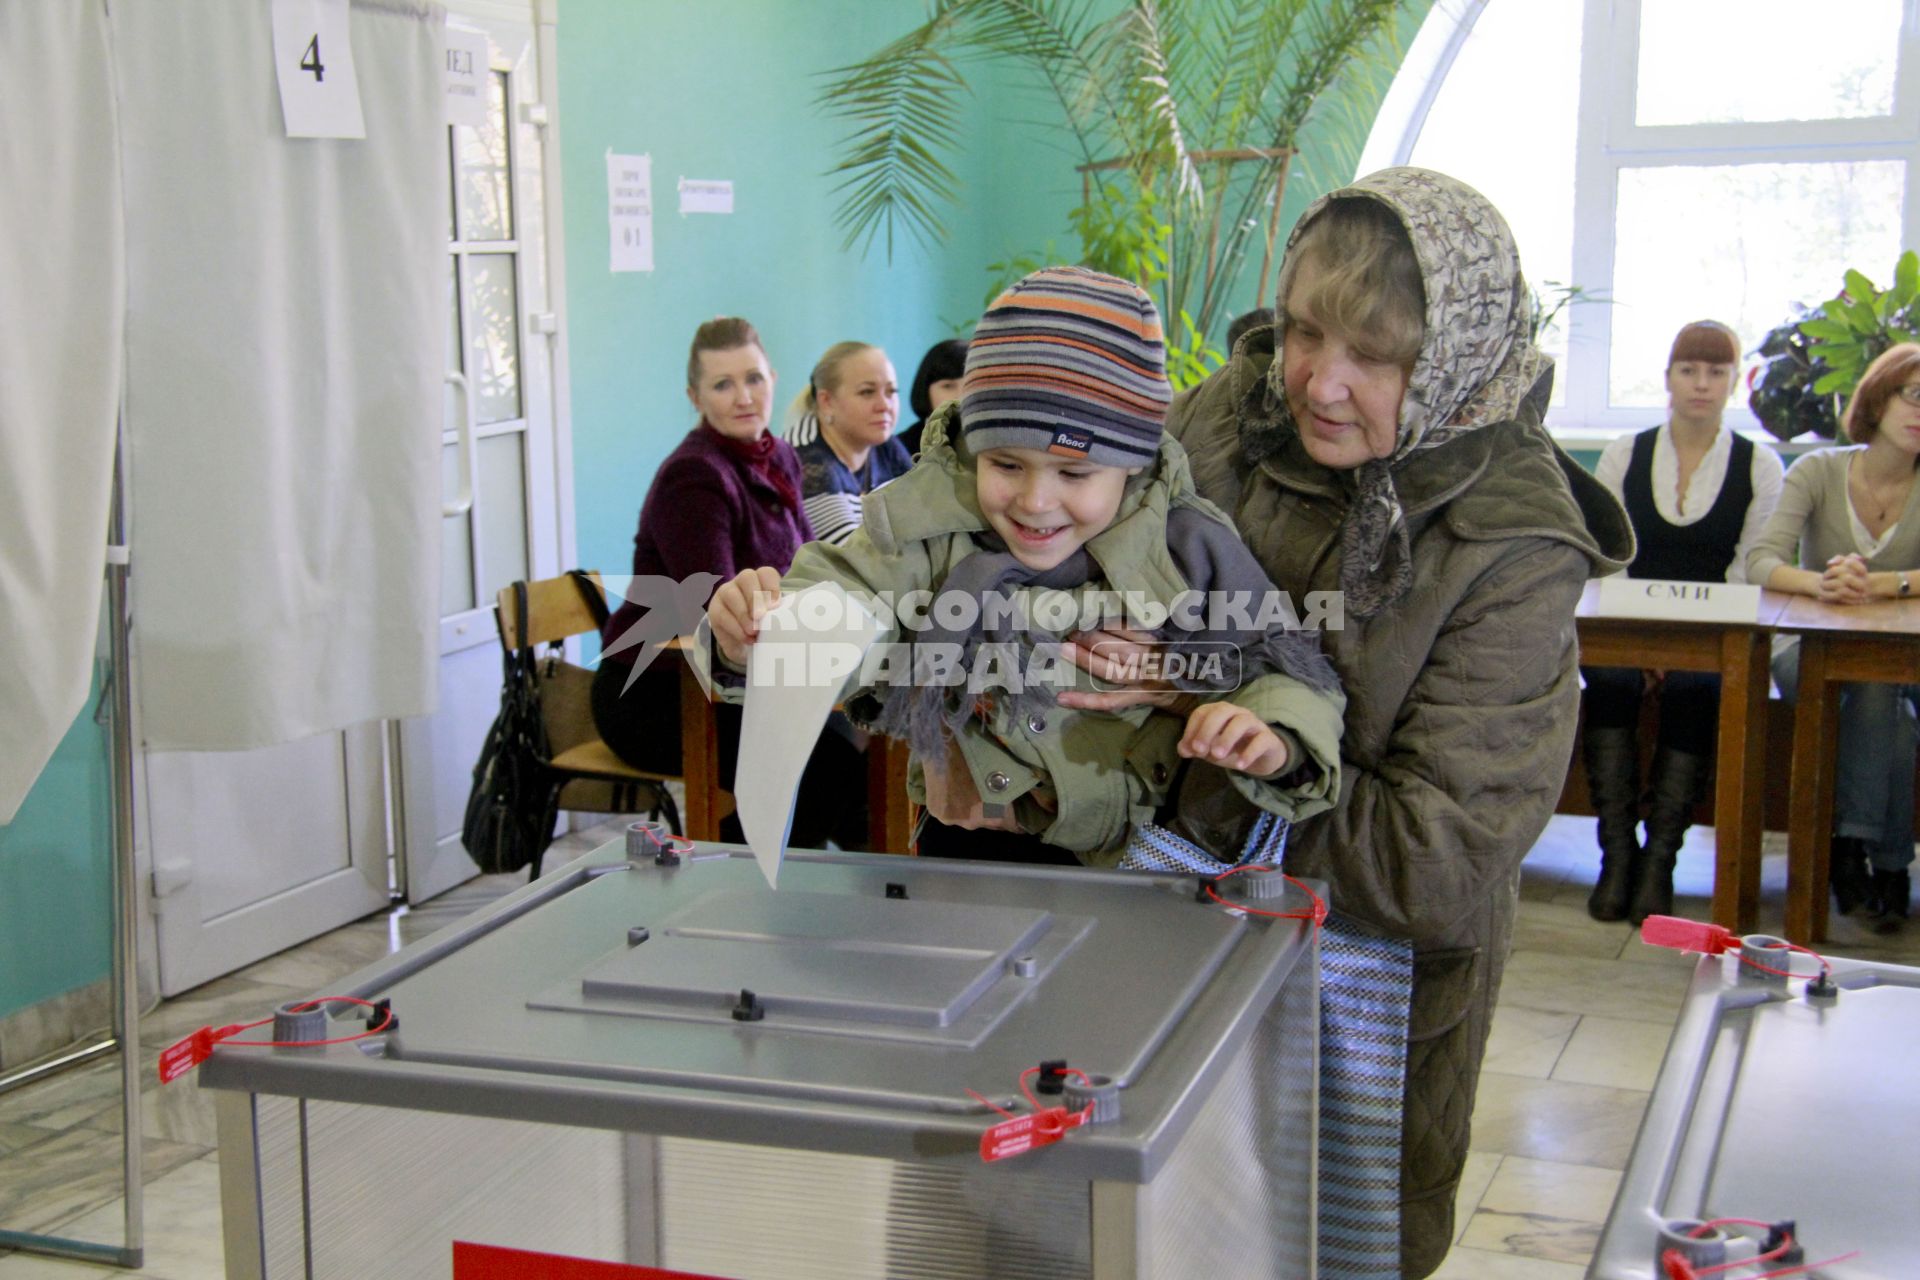 Выборы депутатов городской Думы в Барнауле. Бабушка с внуком голосуют.